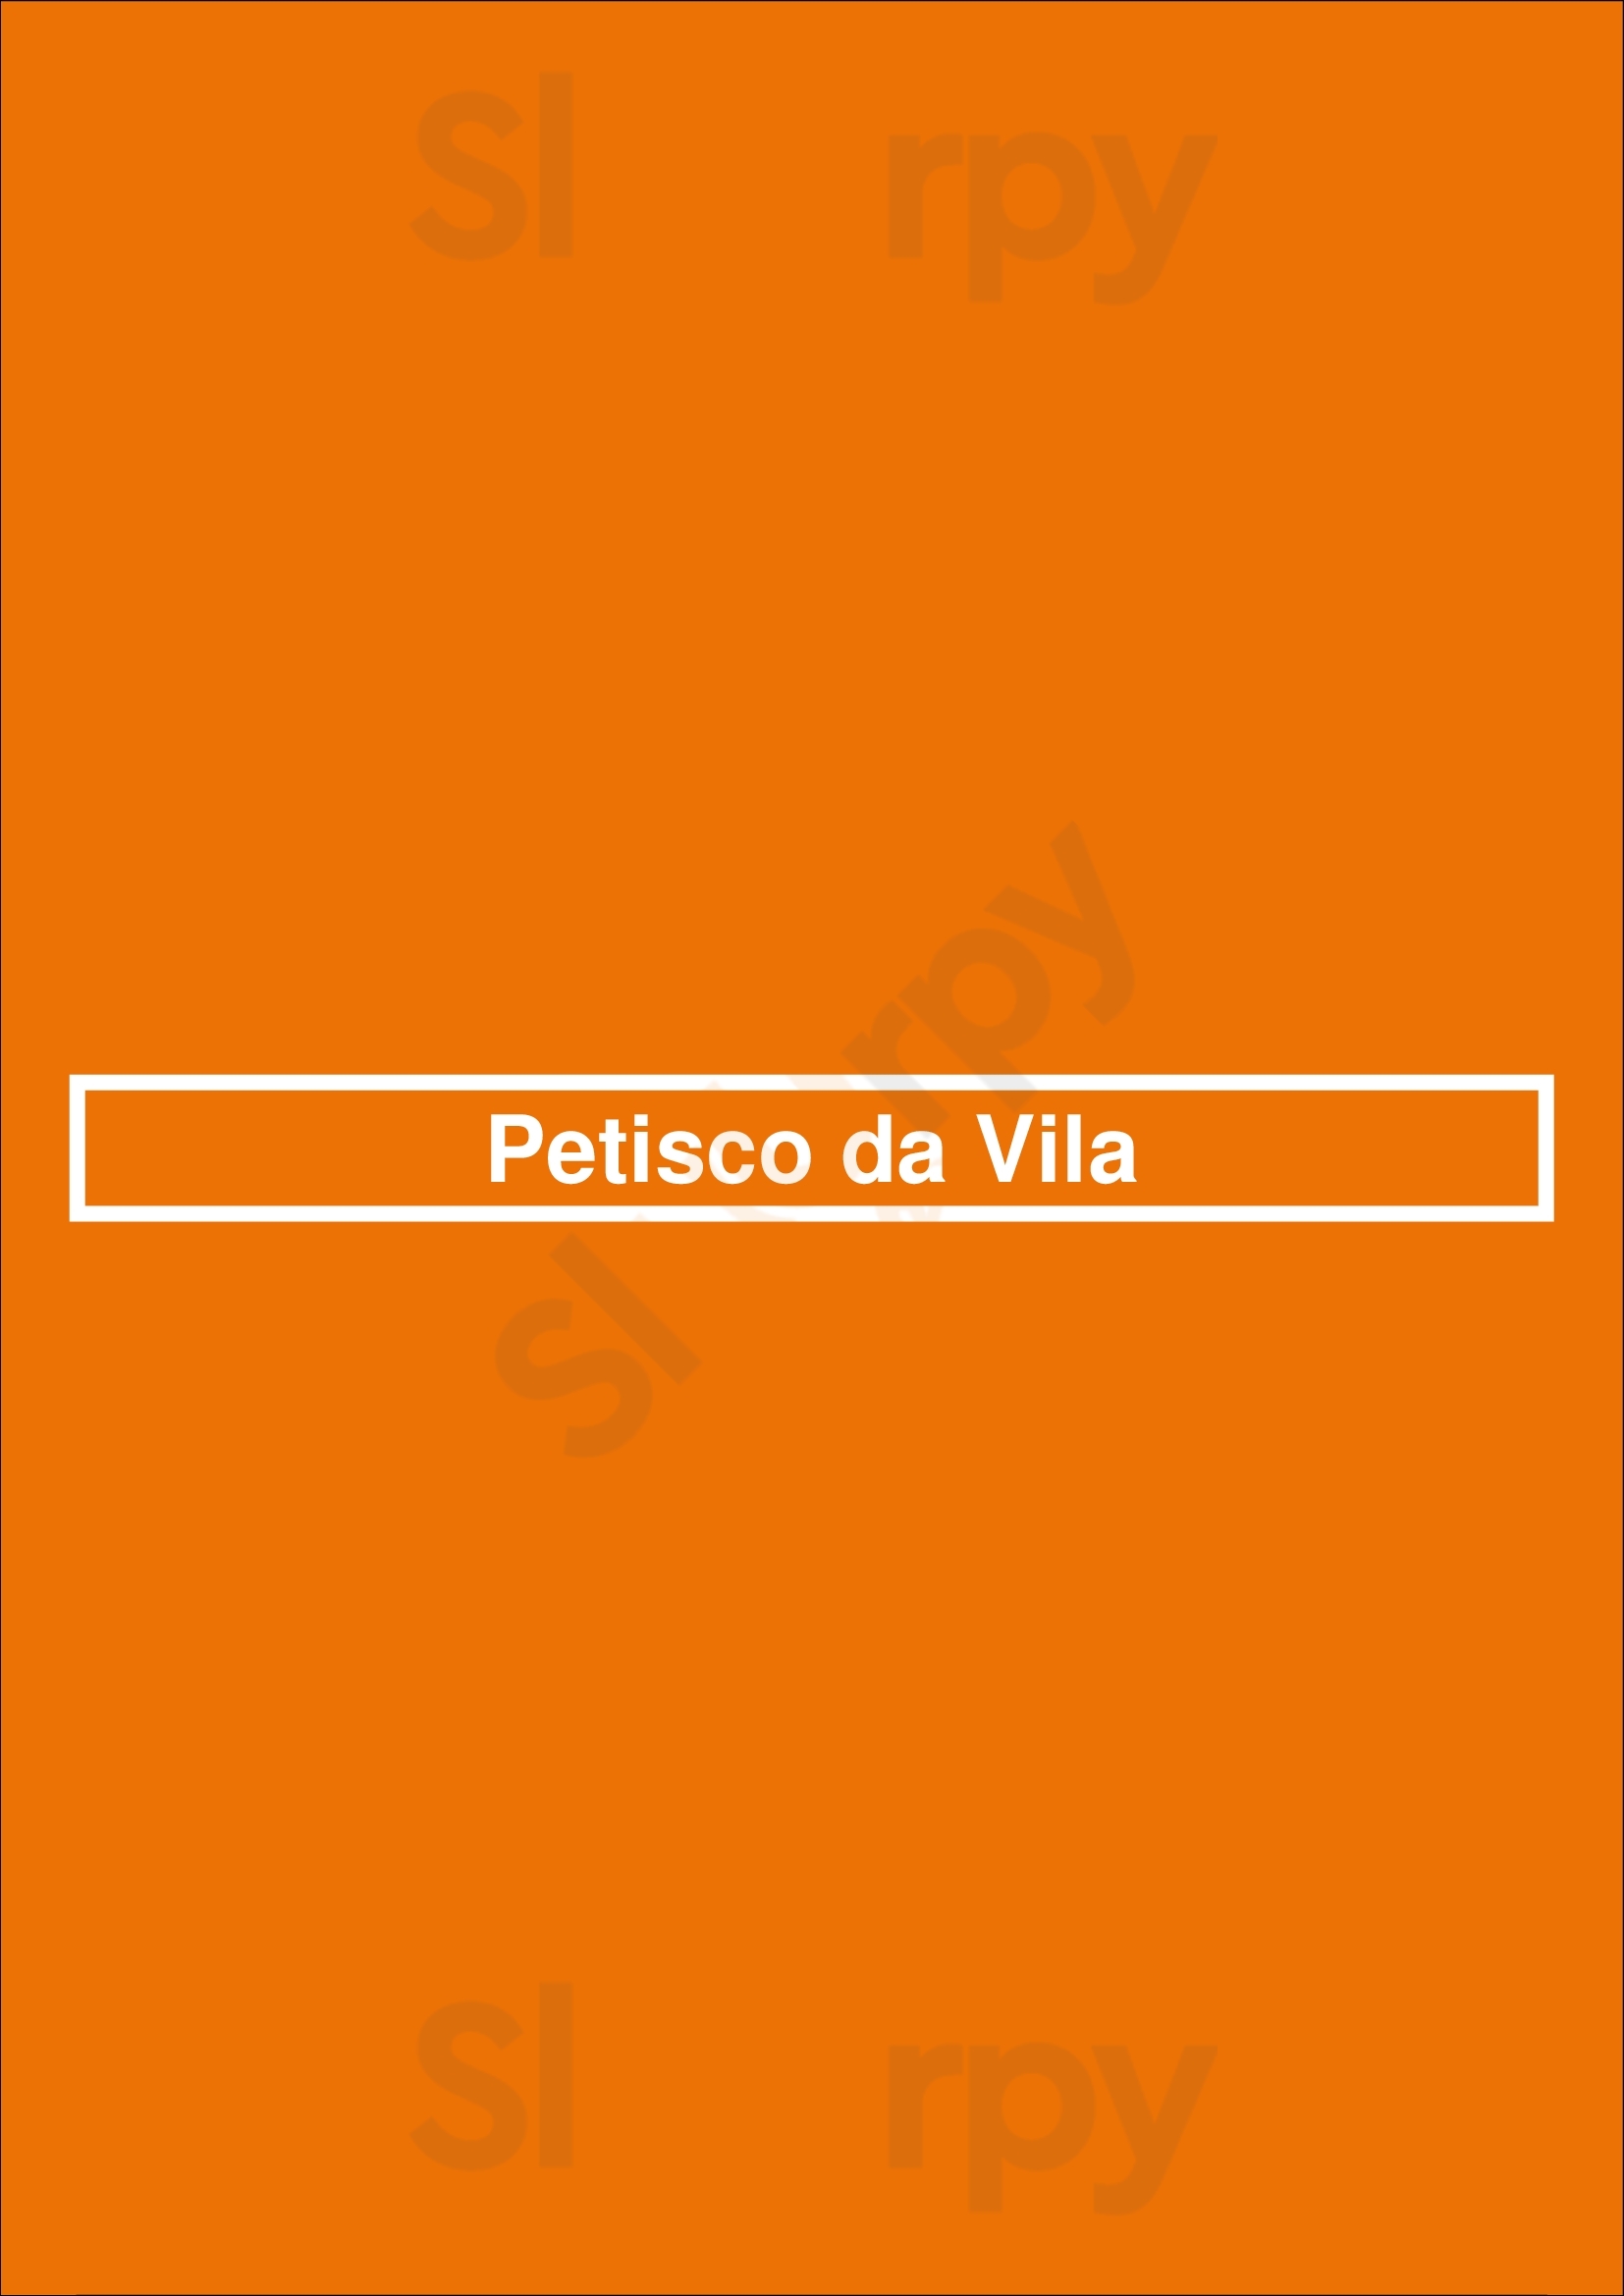 Petisco Da Vila Santa Maria da Feira Menu - 1